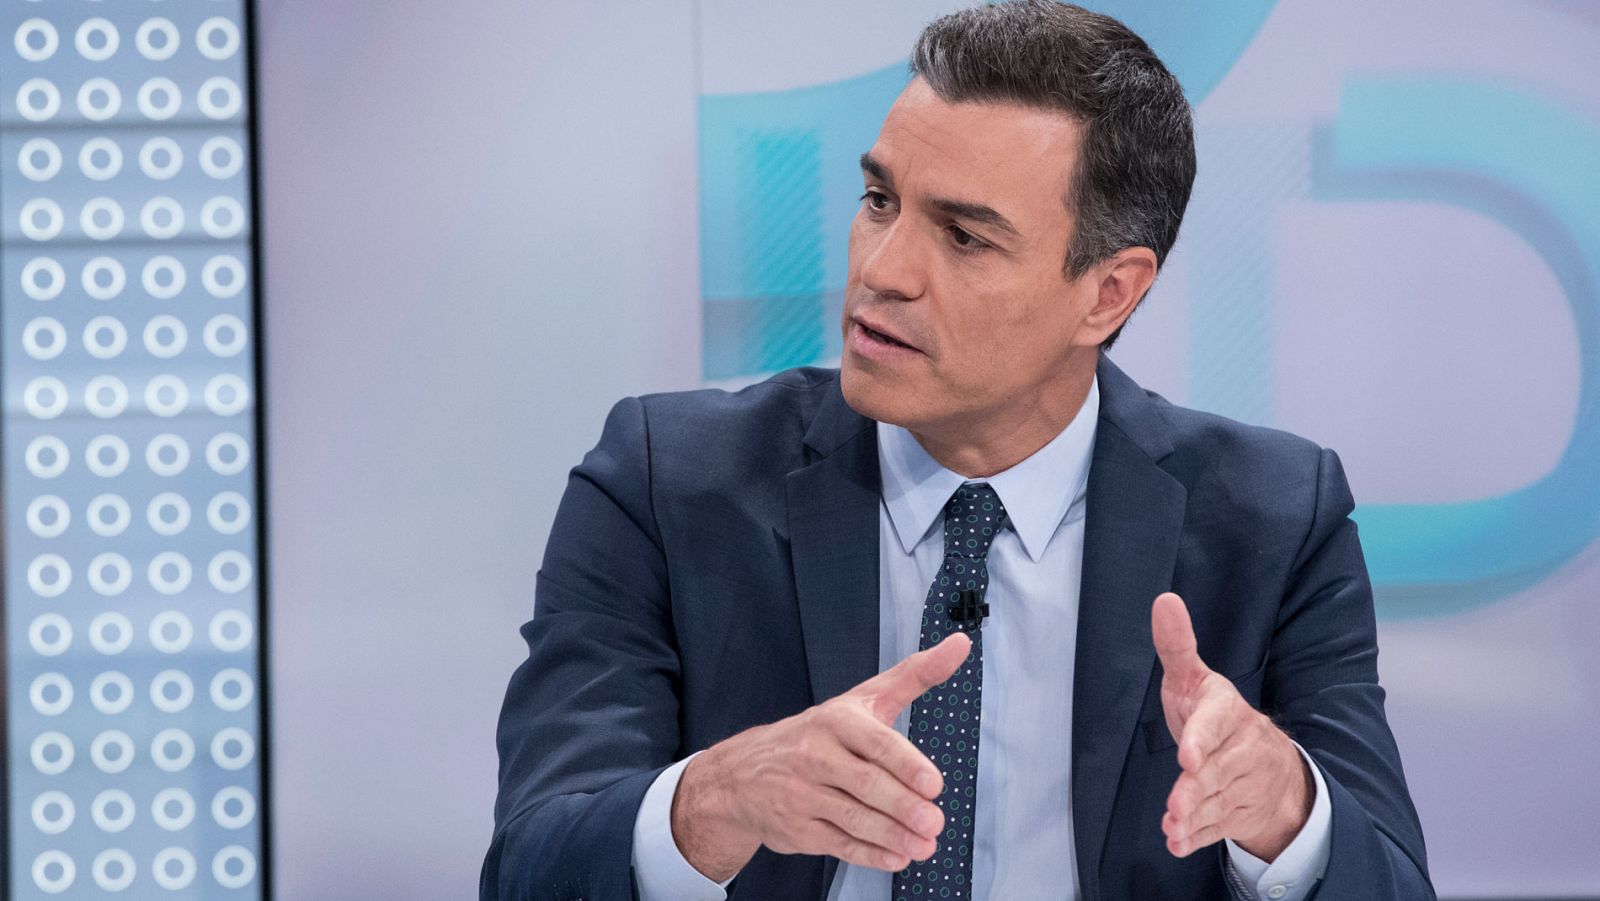 Los titulares de la entrevista a Sánchez en TVE: de las discrepancias con Unidas Podemos a la reforma constitucional